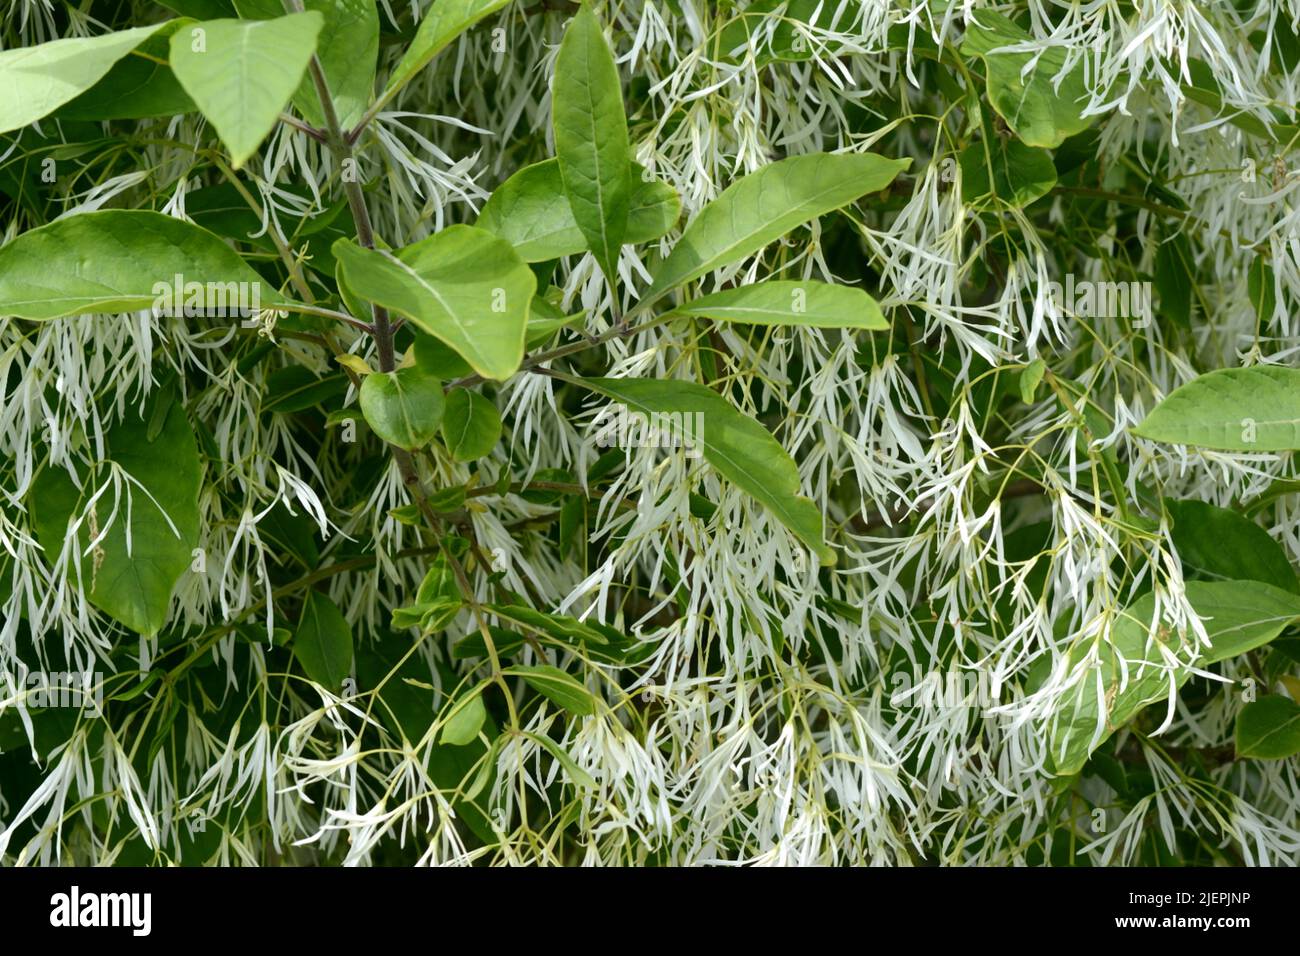 Chionanthus virginicus Abundancia de flores blancas cremosas ligeramente fragantes Foto de stock